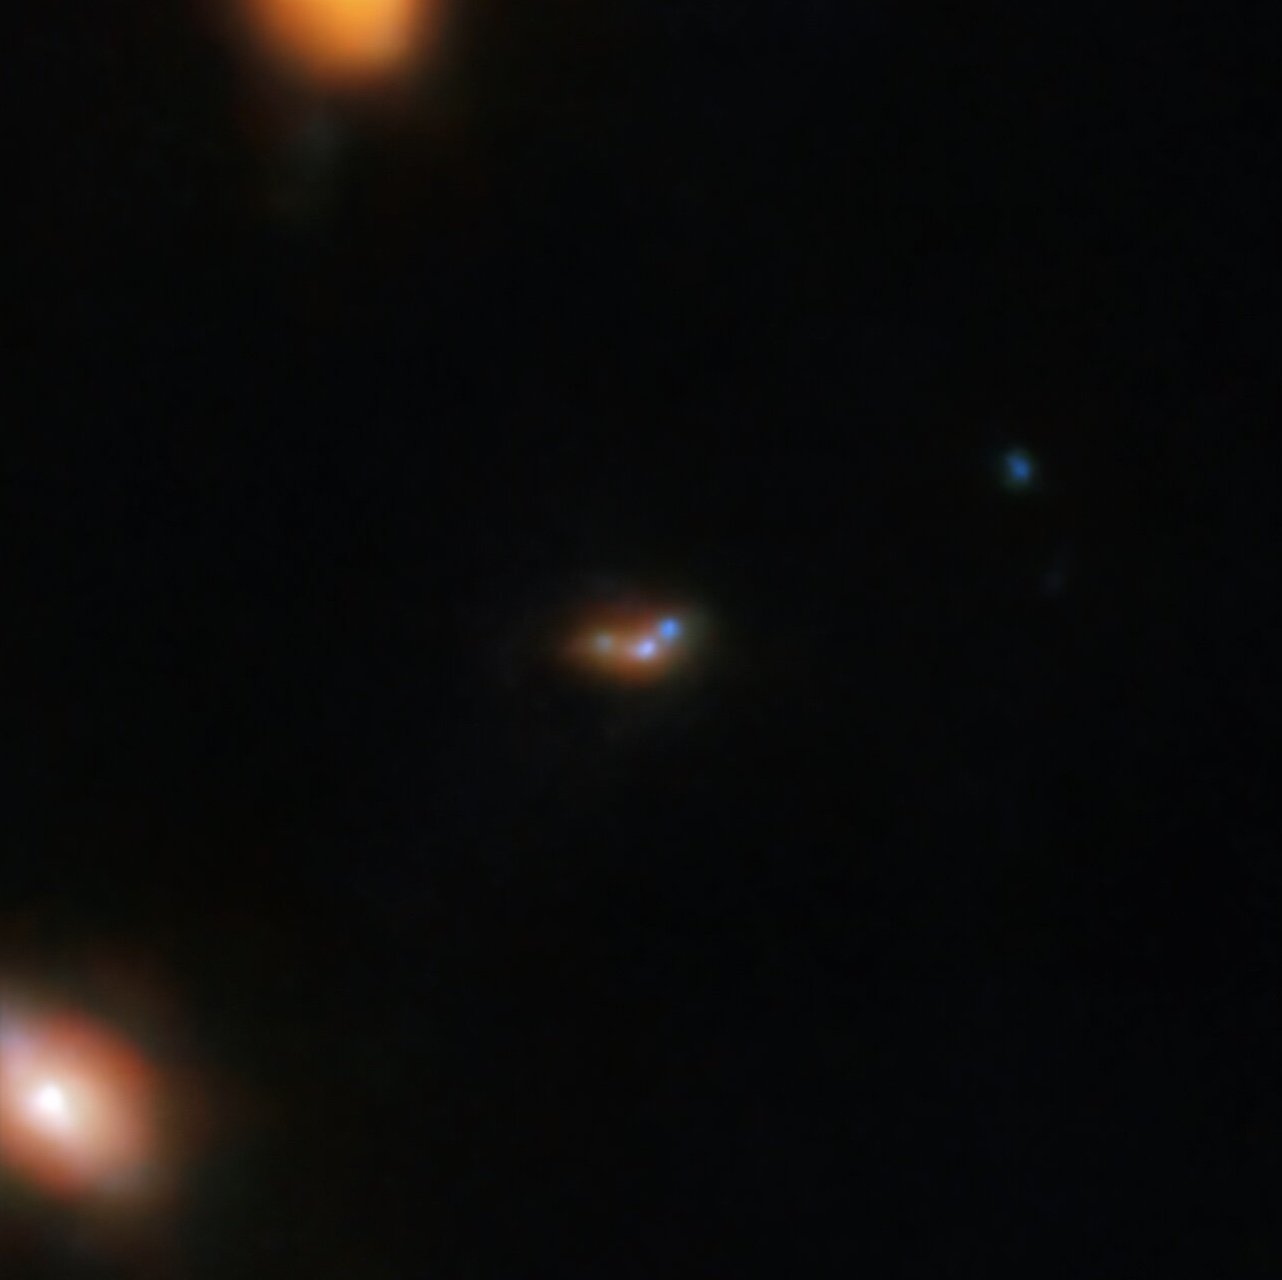 Lyman-α emitting galaxy 